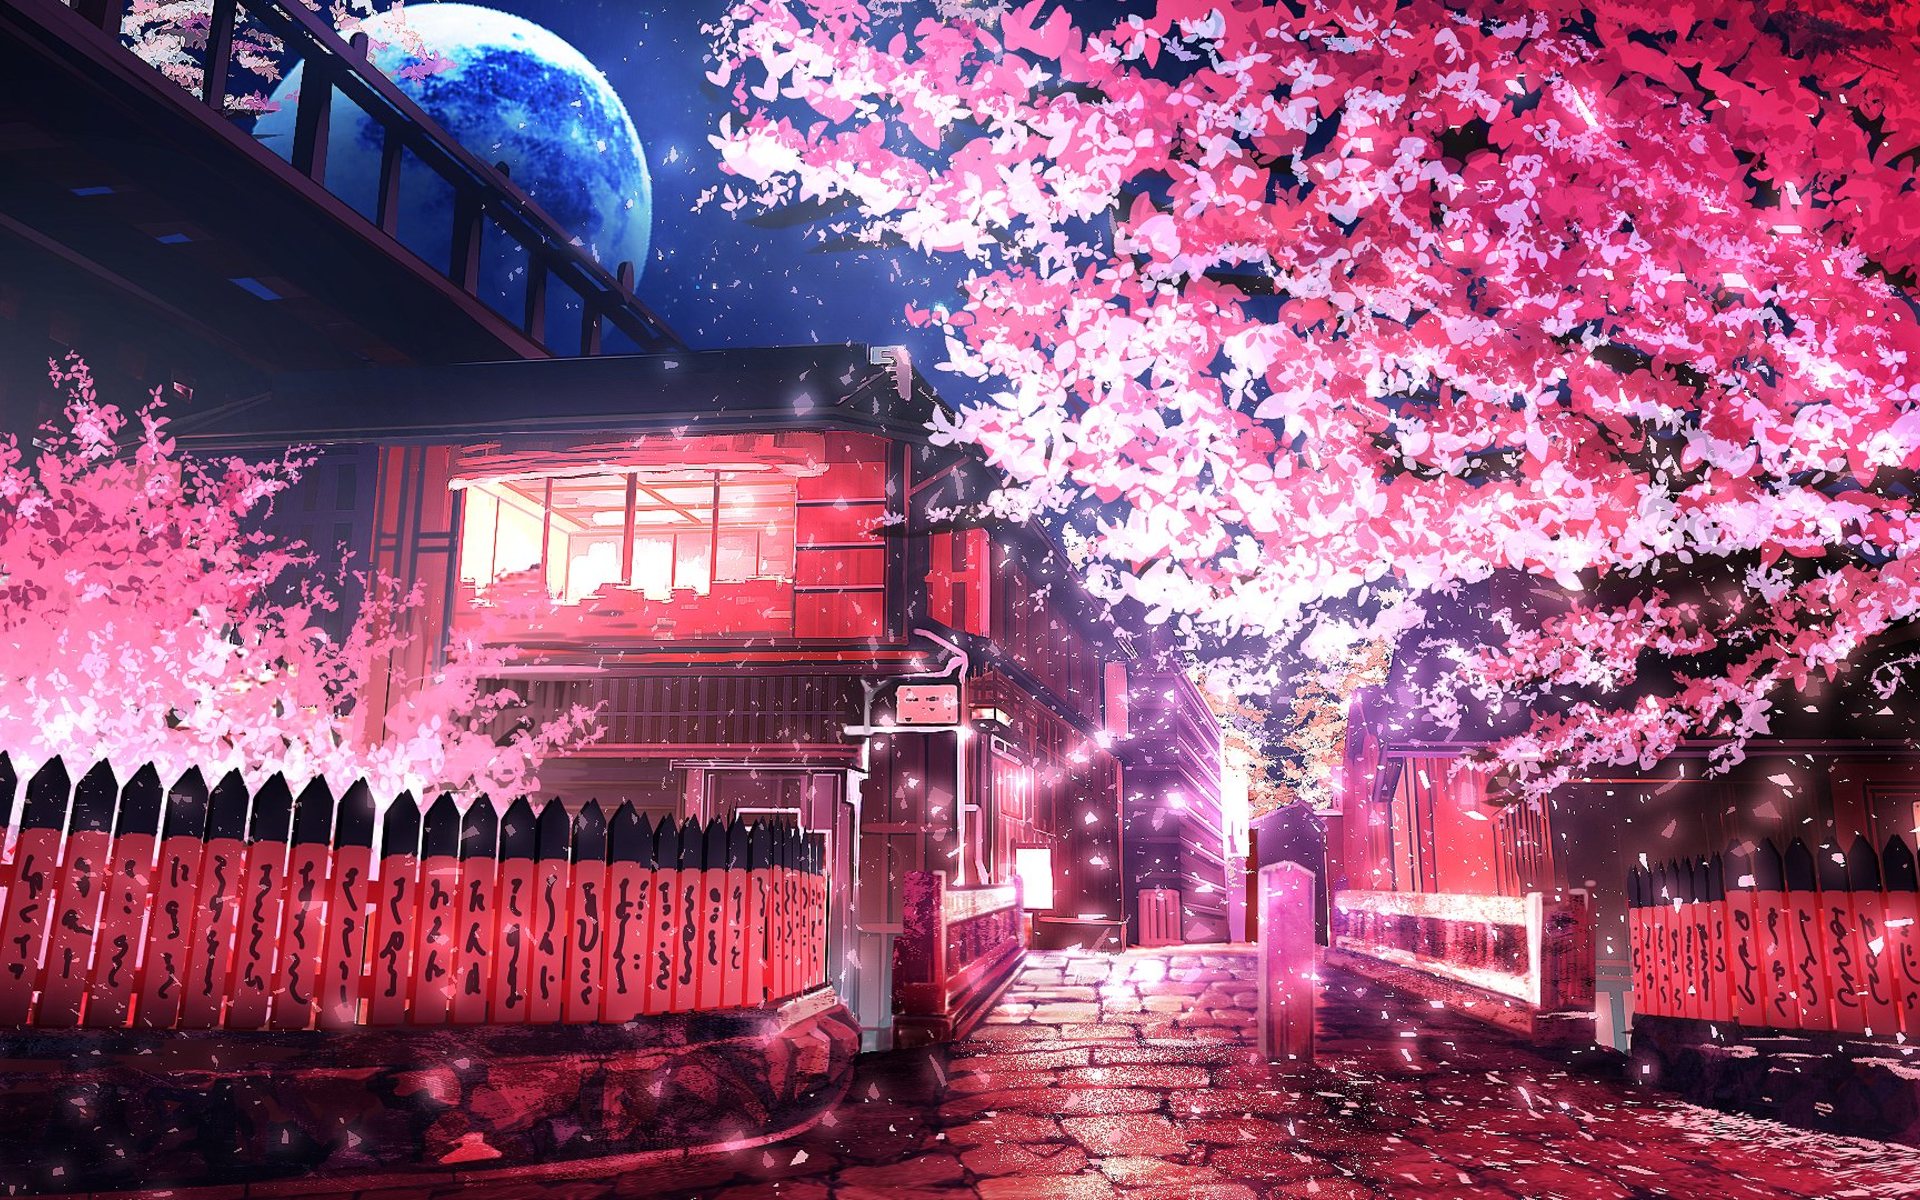 ダウンロード画像 日本の市 通り 春 夜 桜 桜の木 画面の解像度 19x10 壁紙デスクトップ上